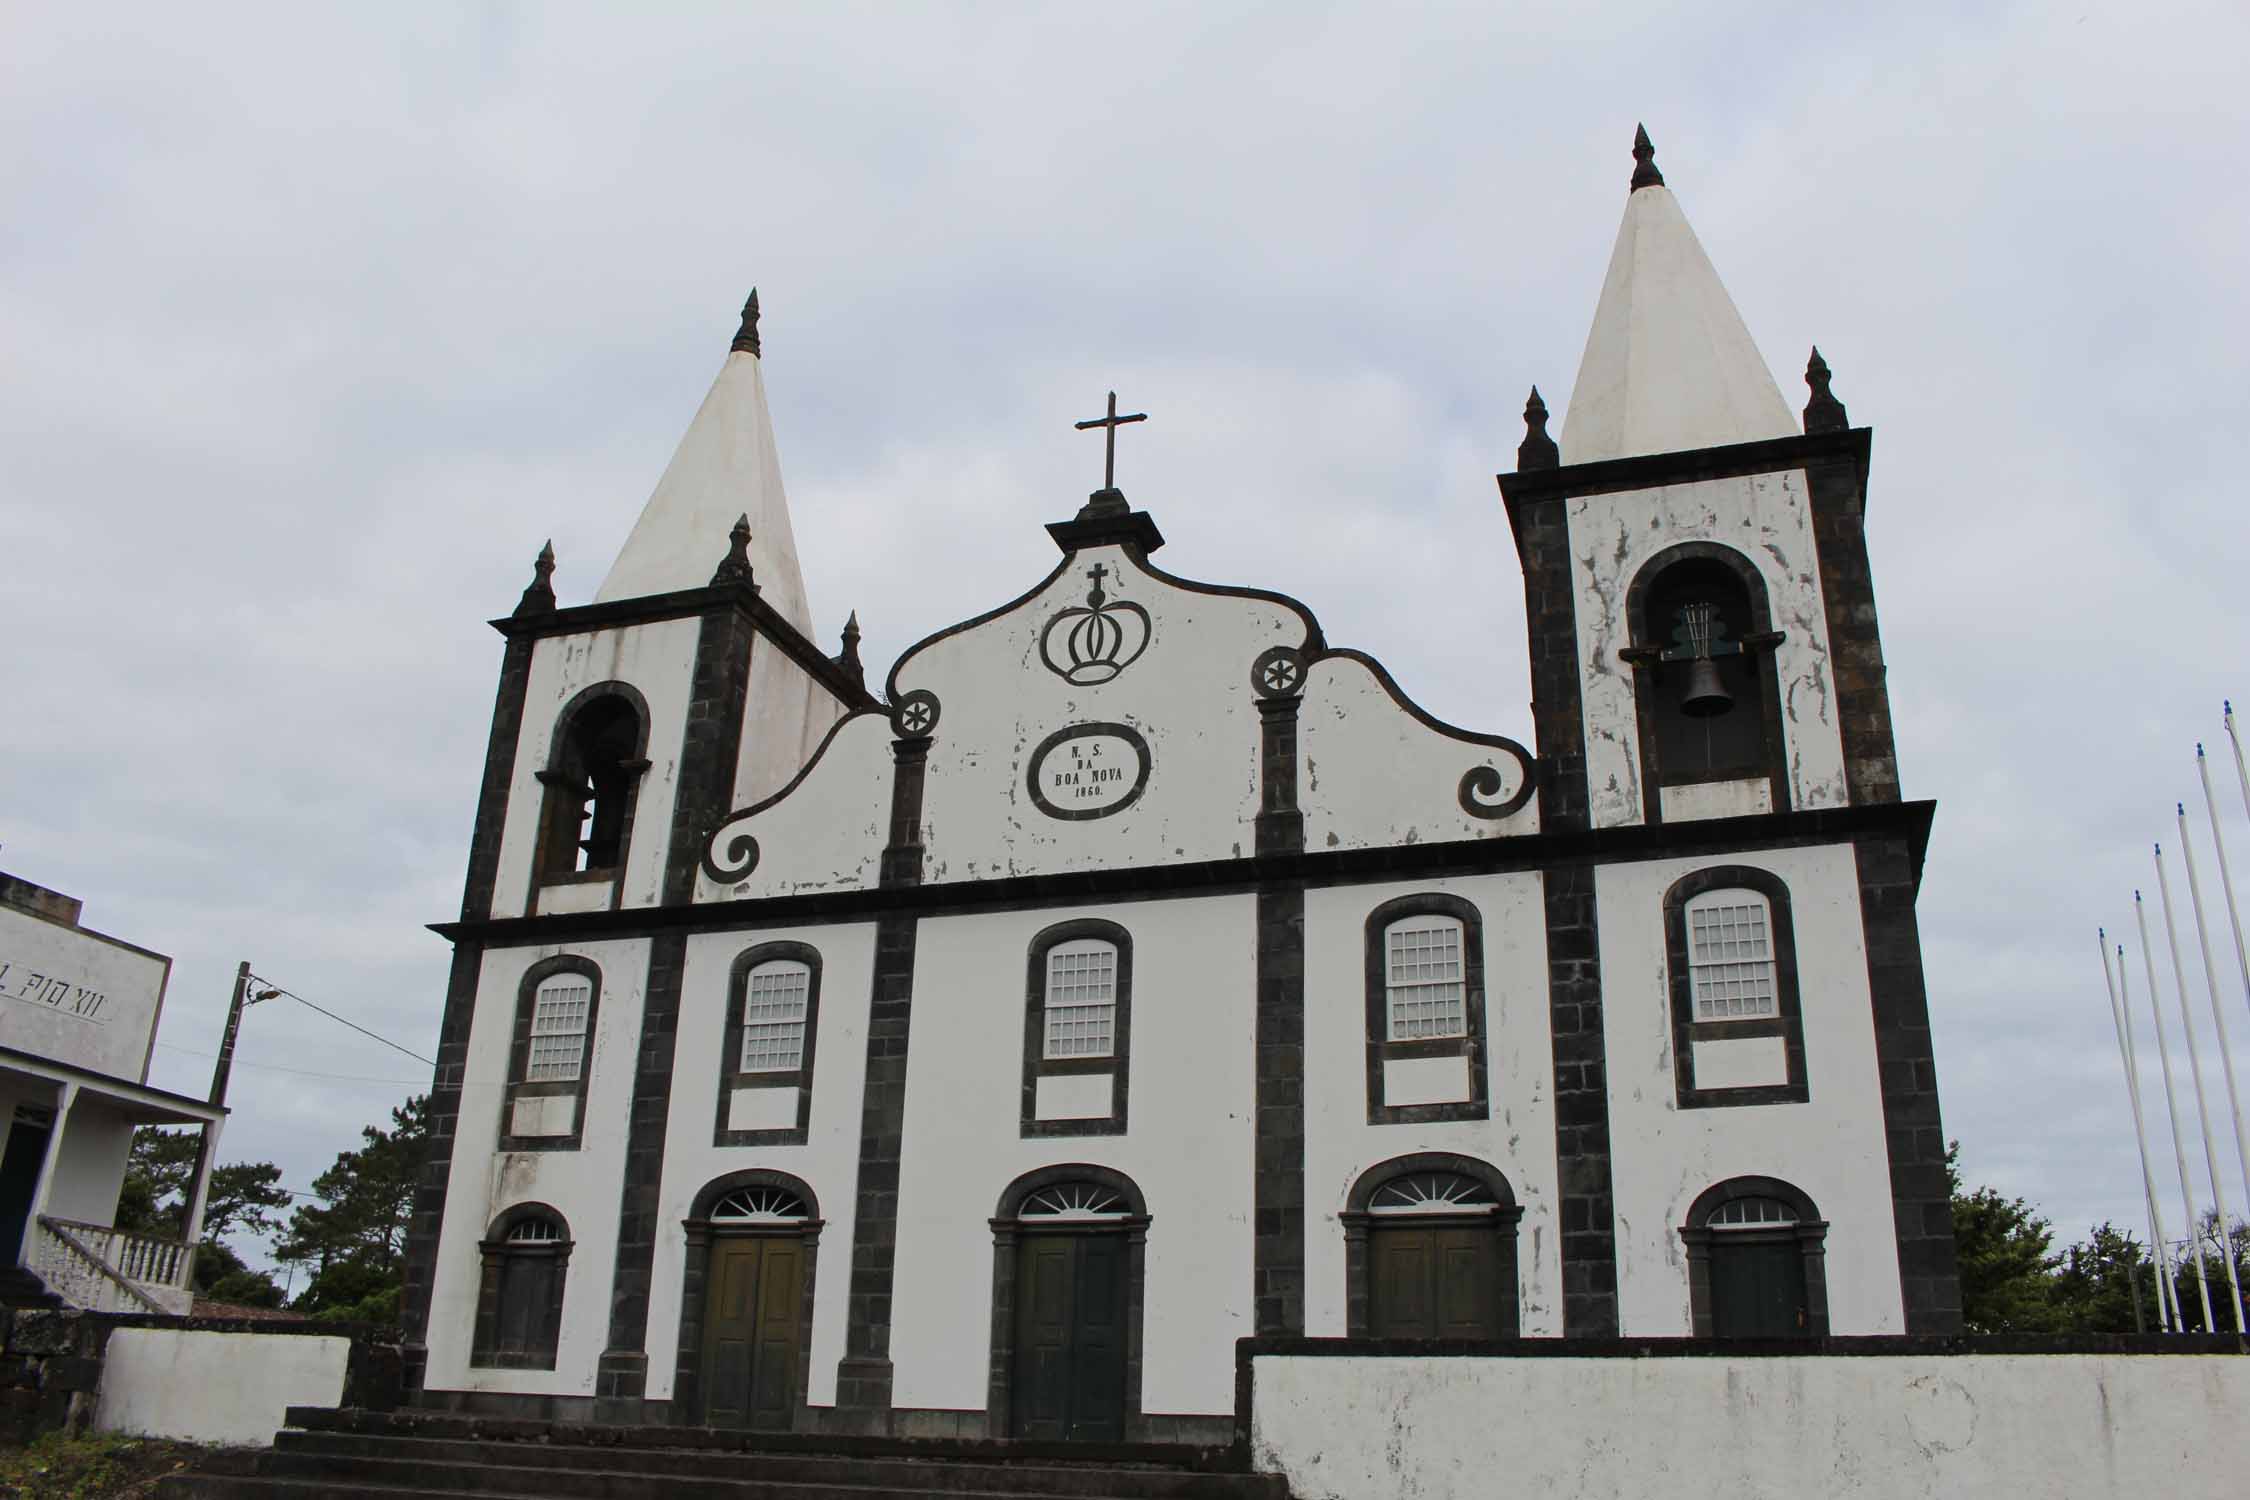 Açores, Île de Pico, Bandeiras, église